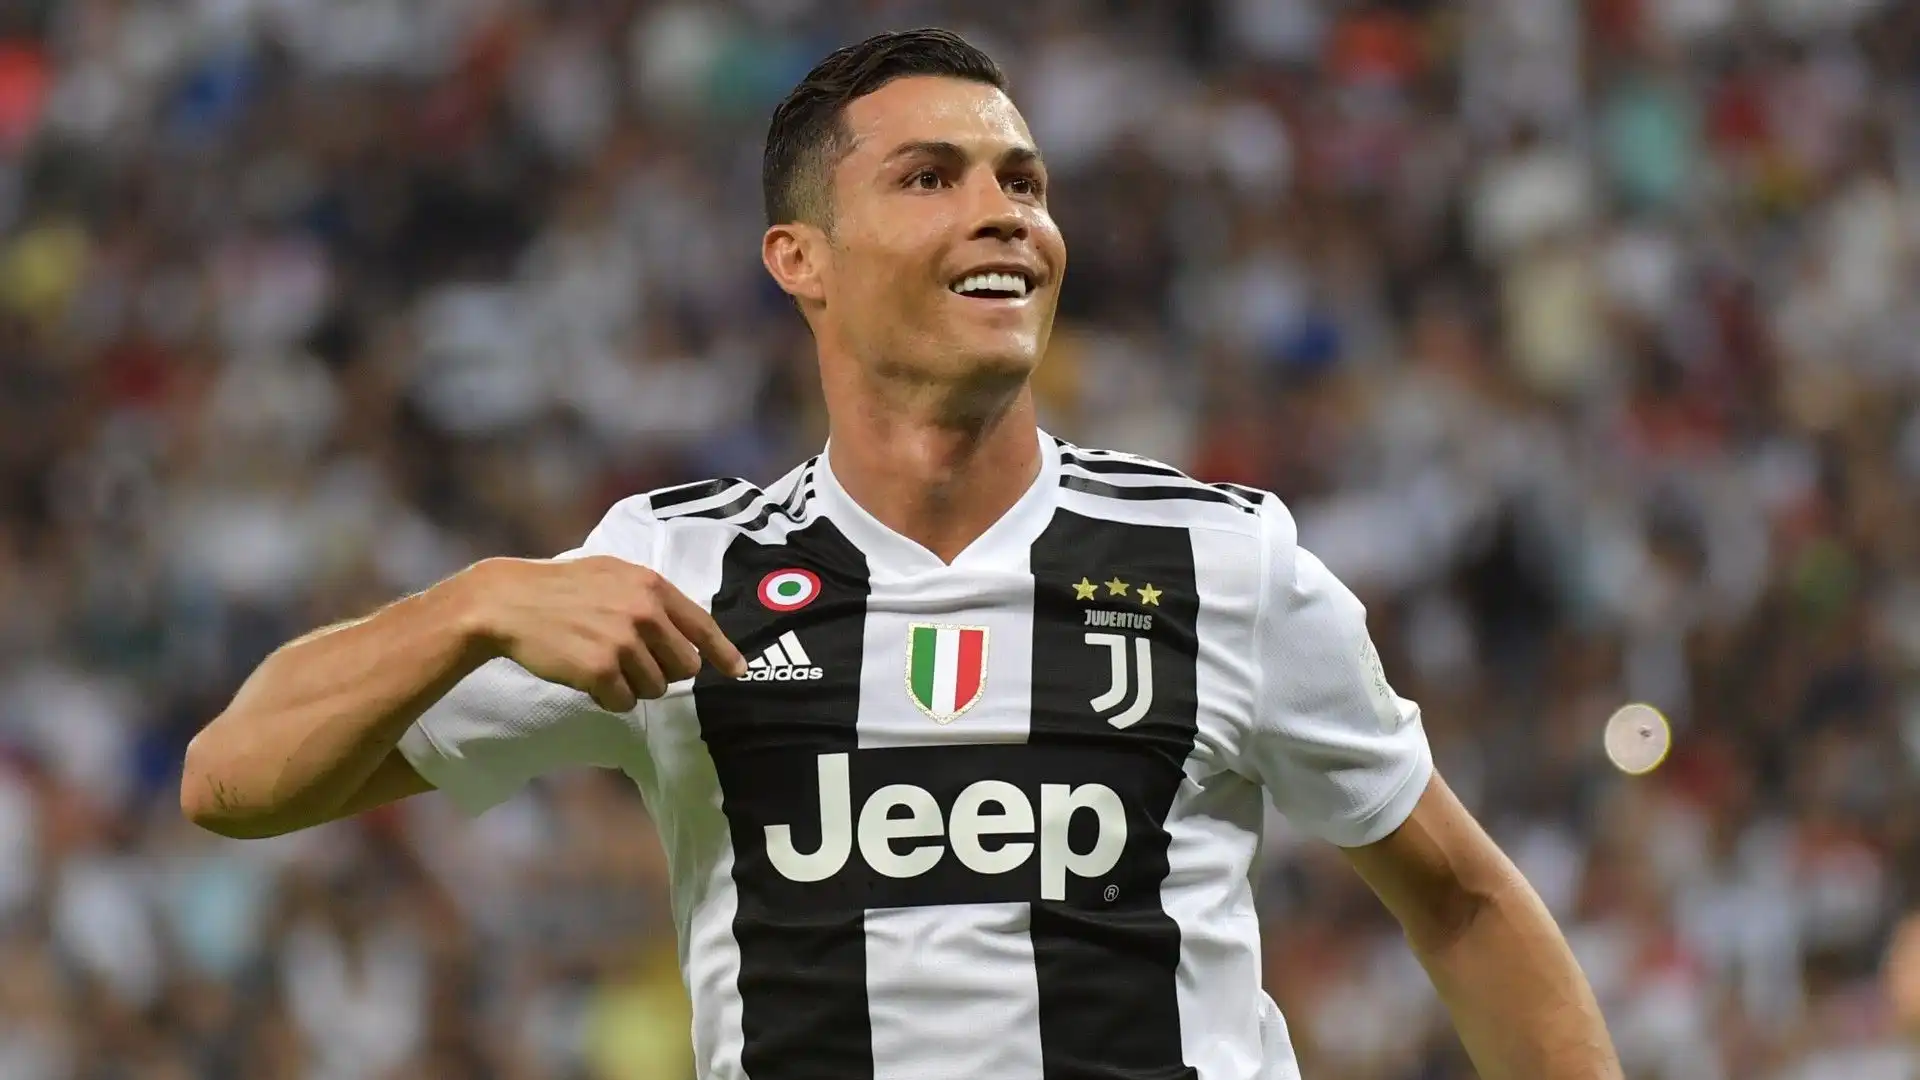 4- Stagione 2018-2019: i tifosi della Juventus impazzivano per Cristiano Ronaldo, che all'epoca valeva 100 milioni di euro